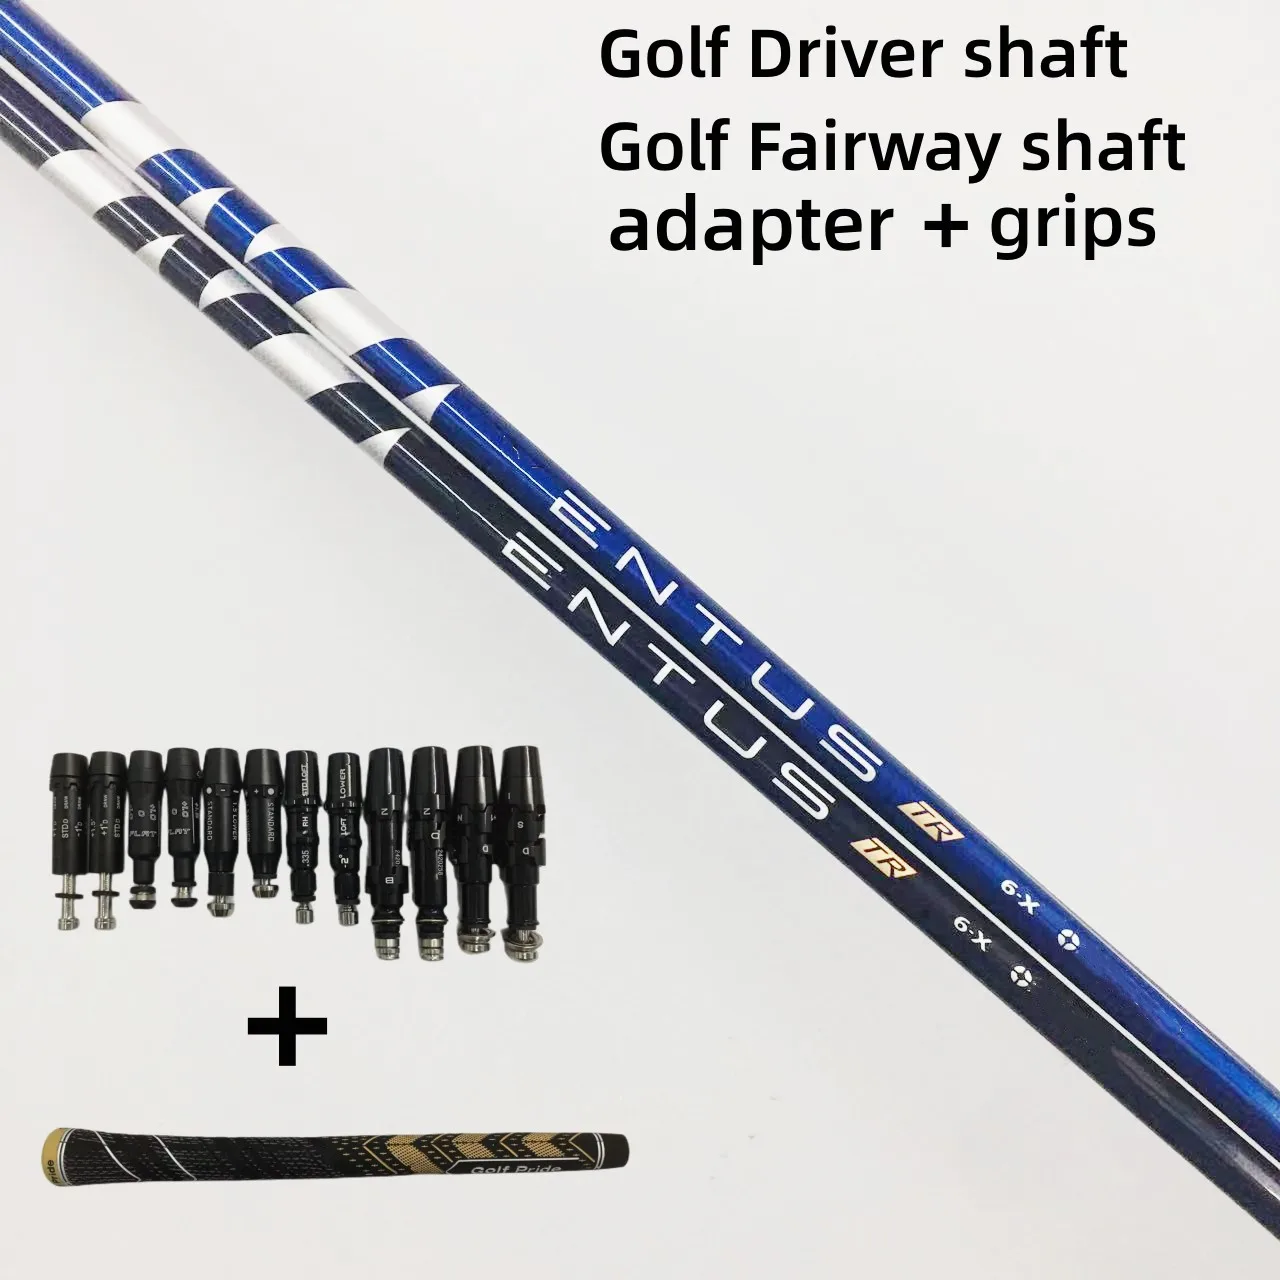 

Новый вал для гольф-клубов синий/черный графит 5/6 материал для клюшек для гольфа и деревянный вал для клюшек